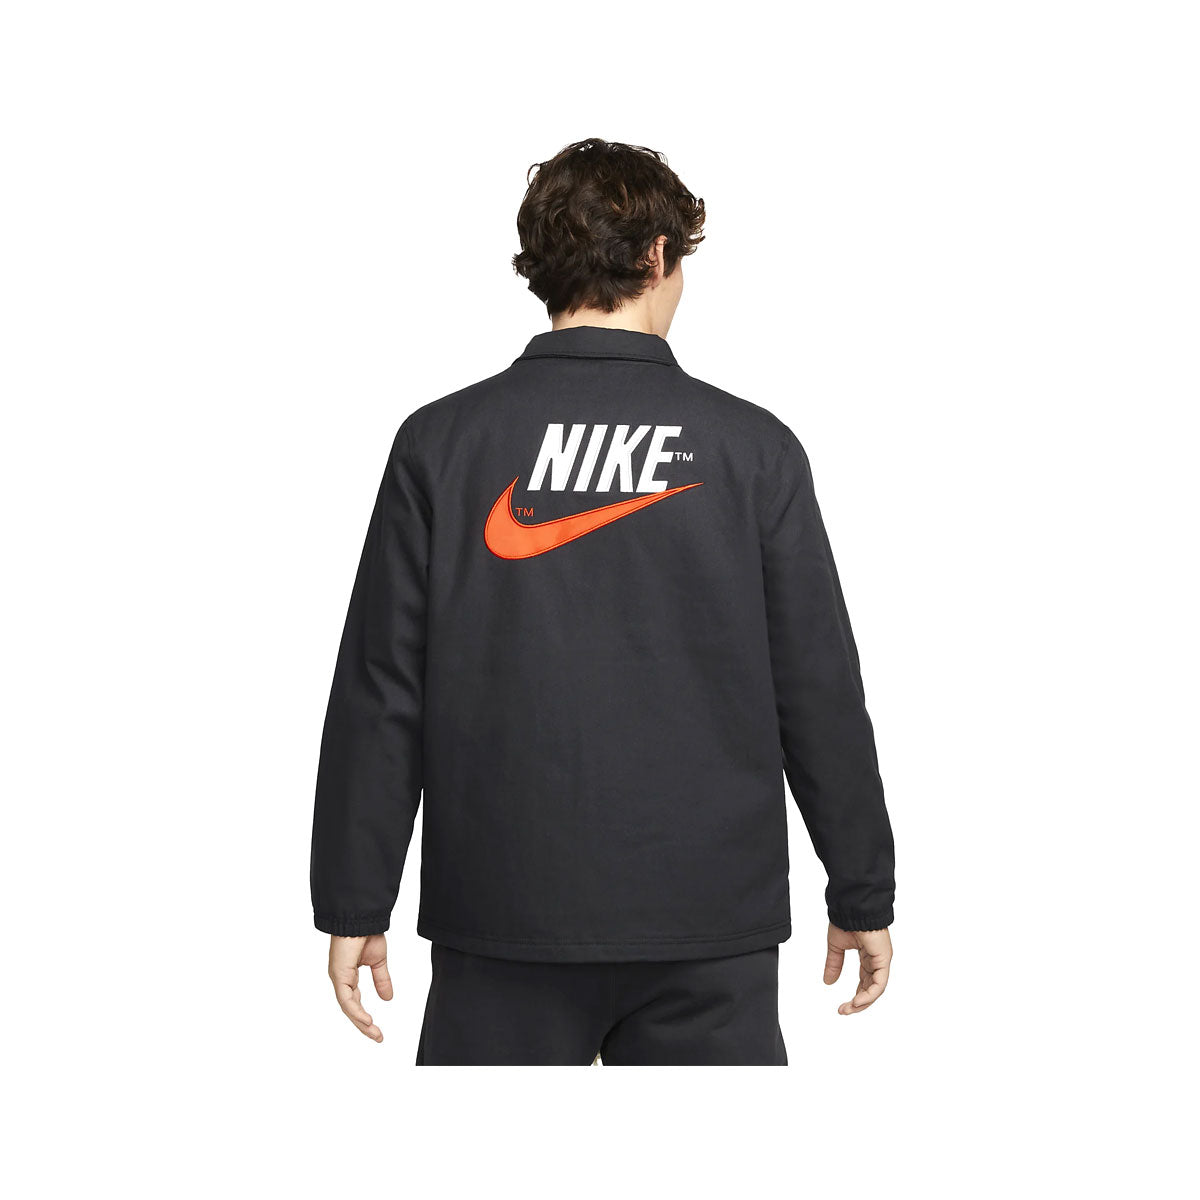 Nike Men's Sportswear Jacket Black